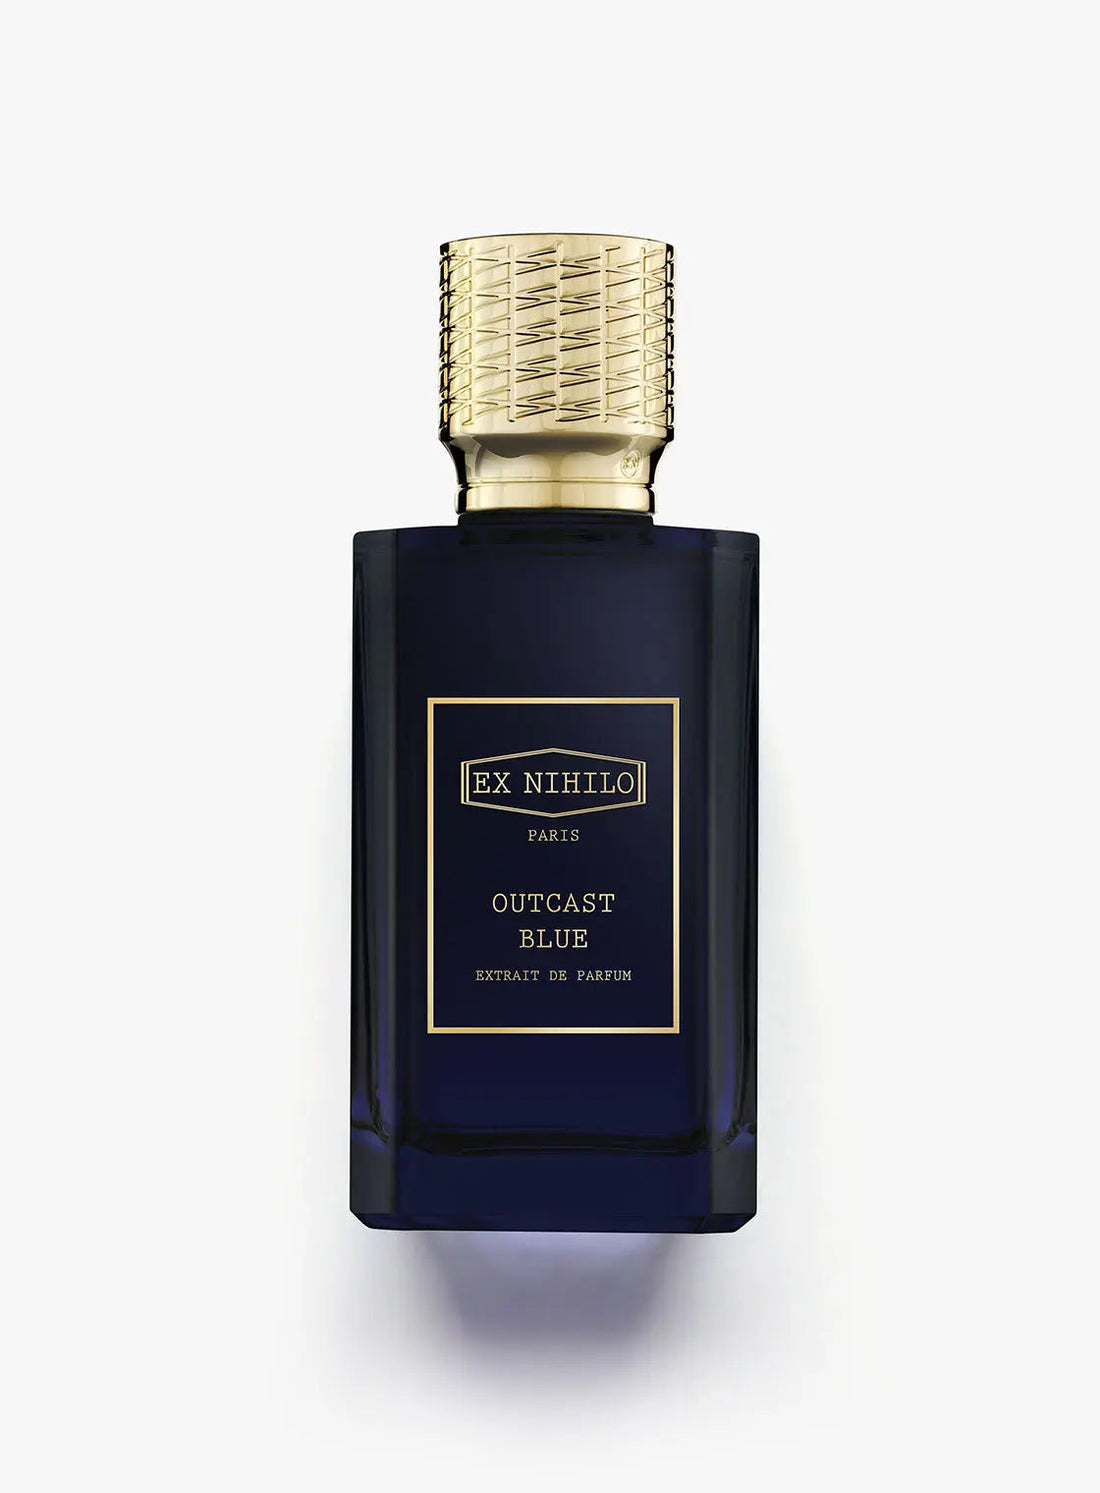 Extrait de Parfum Ex nihilo Outcast Blue - 100 ml